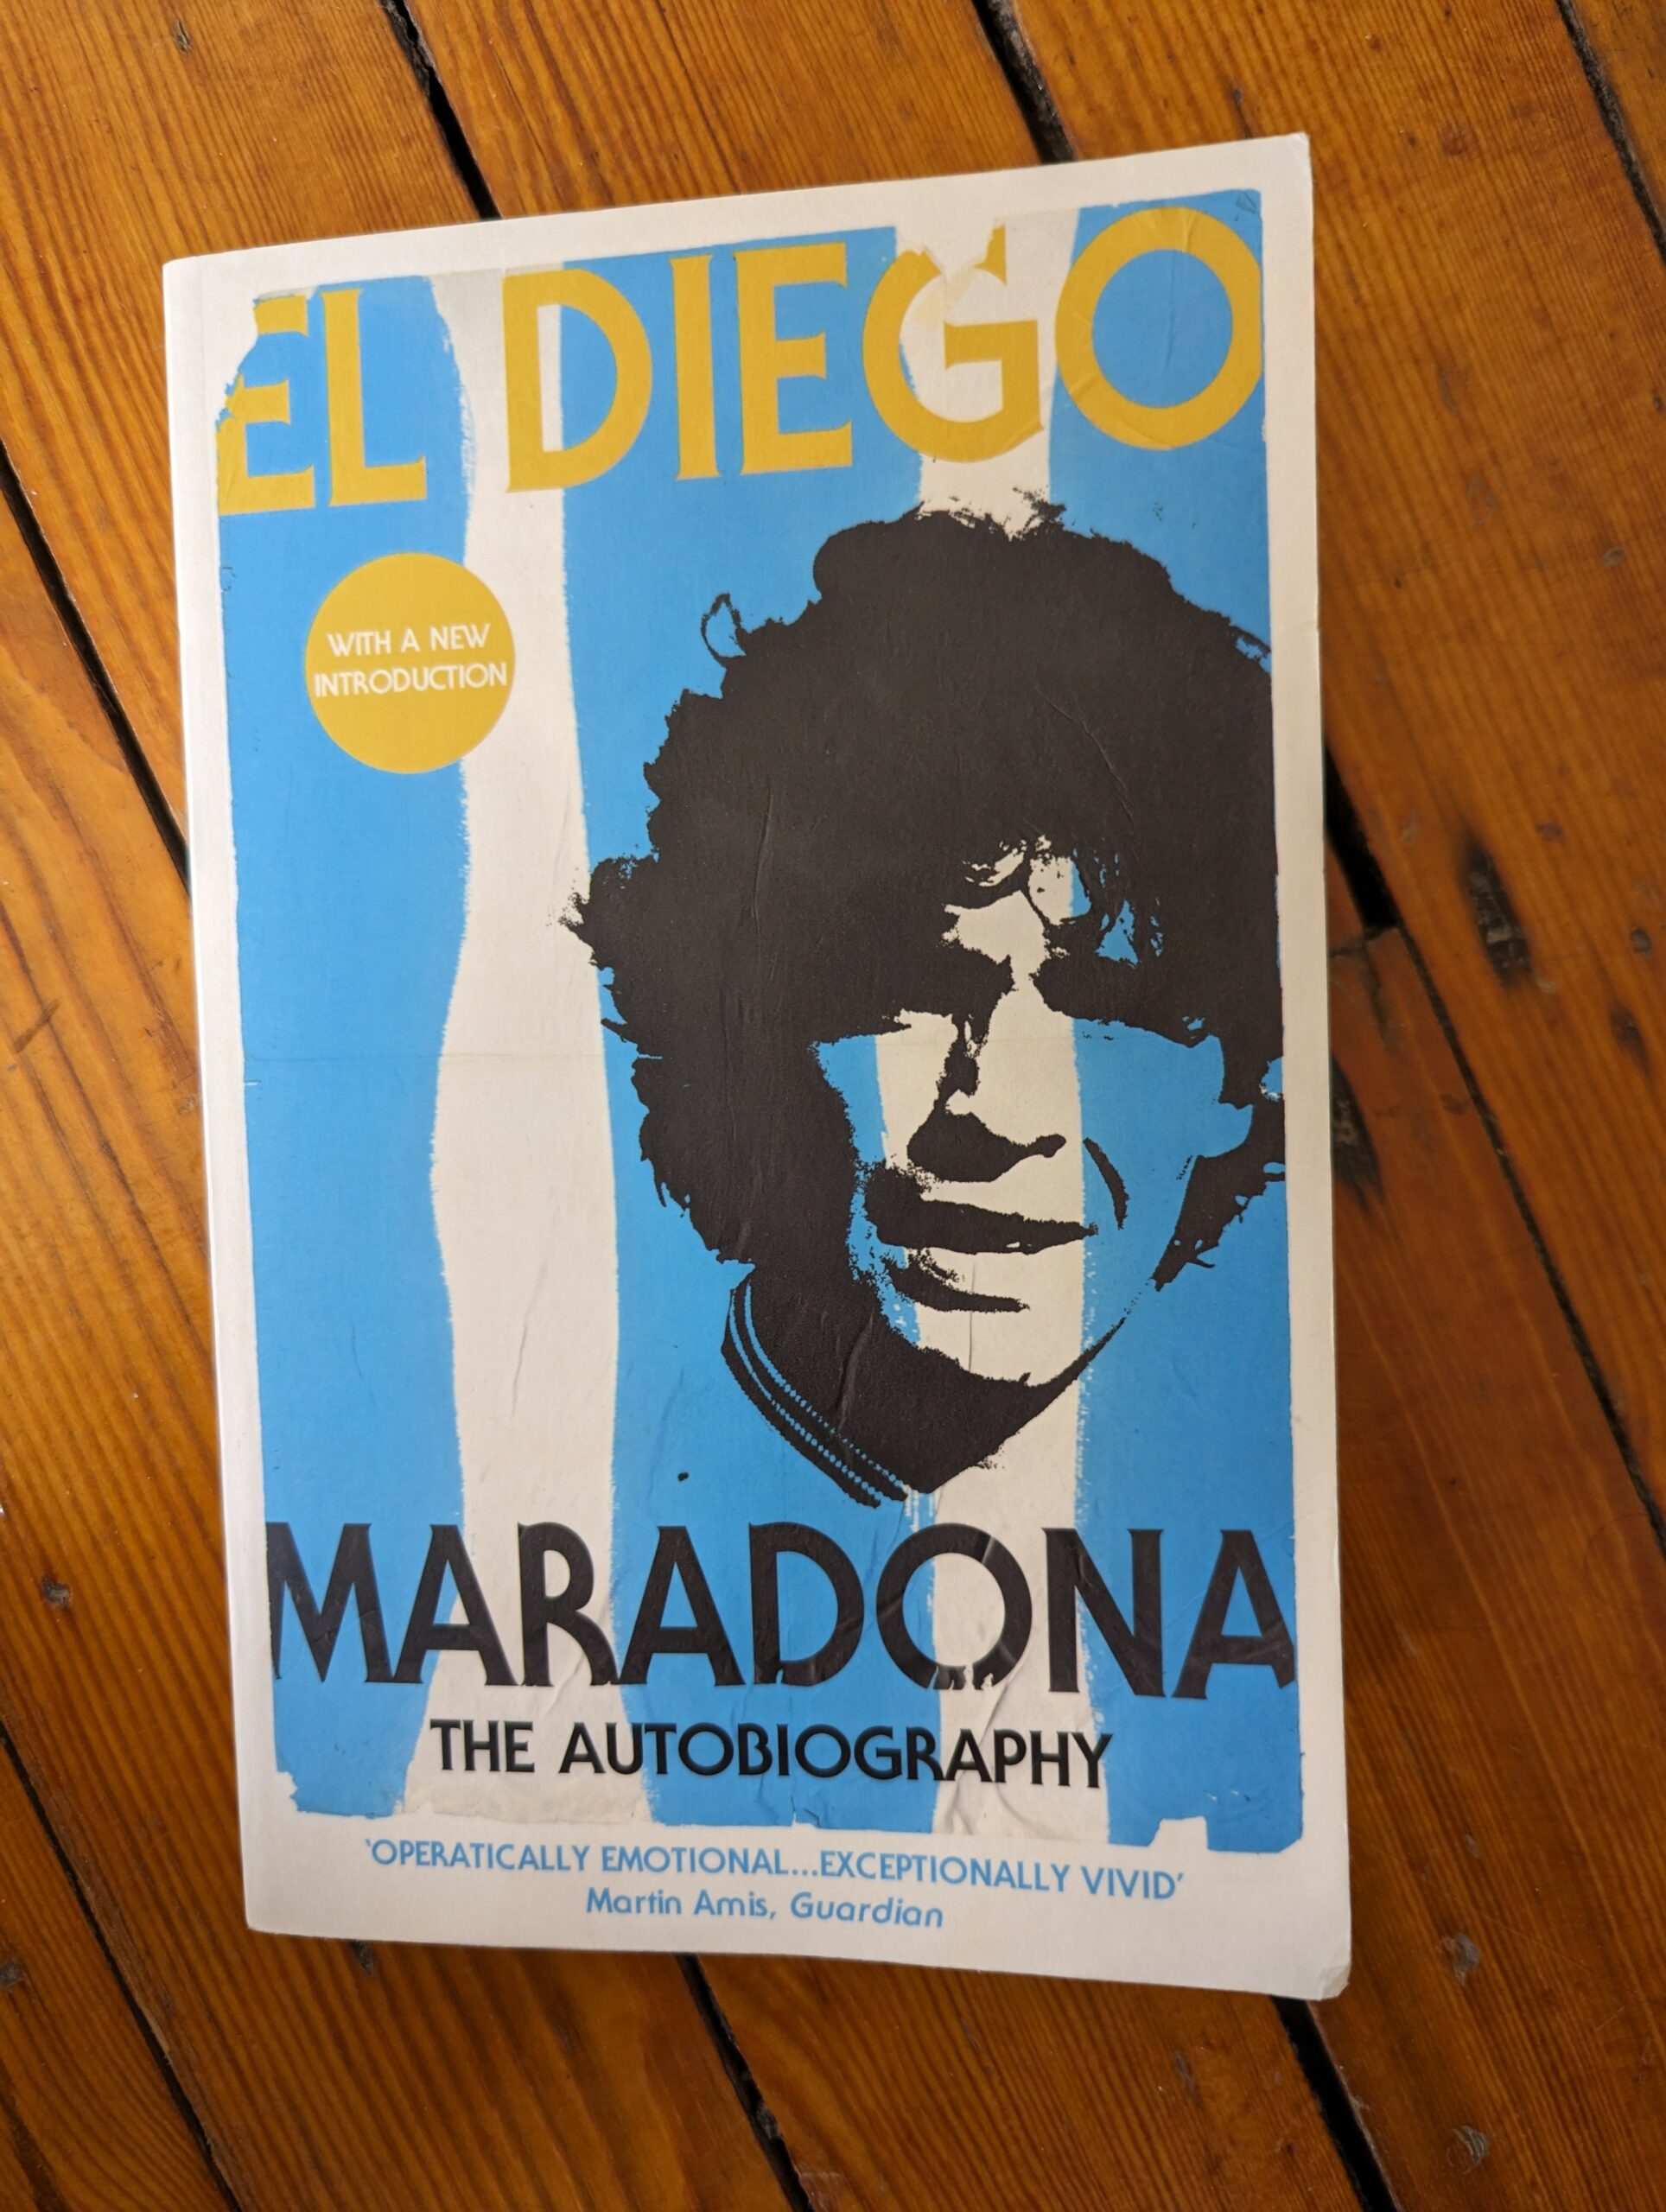 I Love You, Maradona